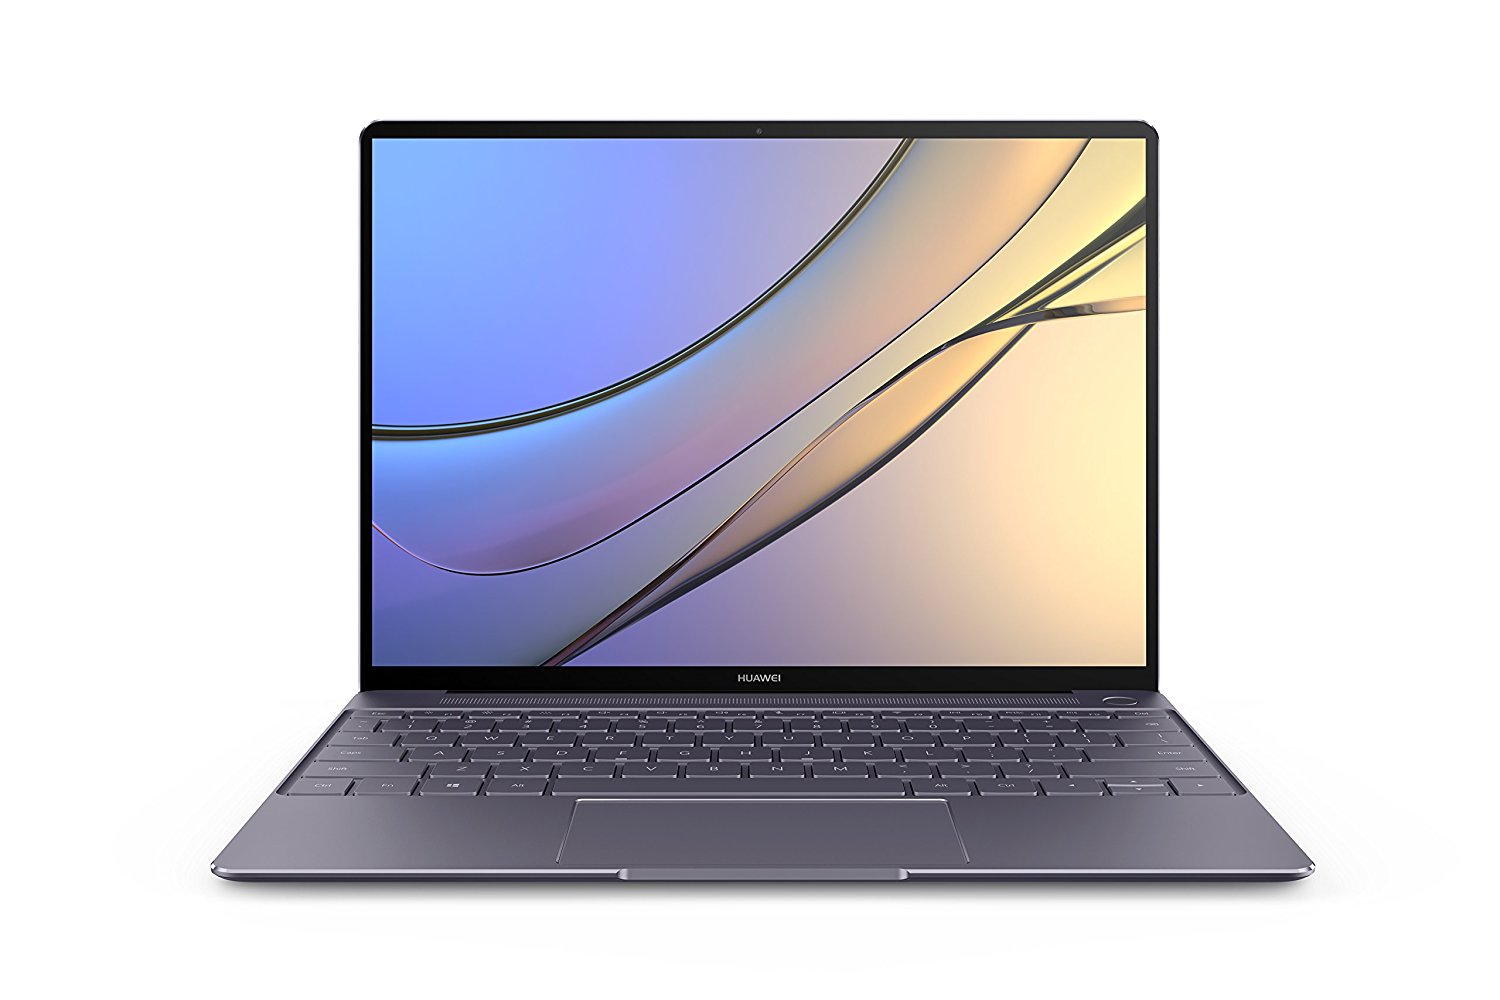  华为 MateBook X WT-W19A 13英寸笔记本电脑 i7-7500U/8G/512GSSD/集显的图片